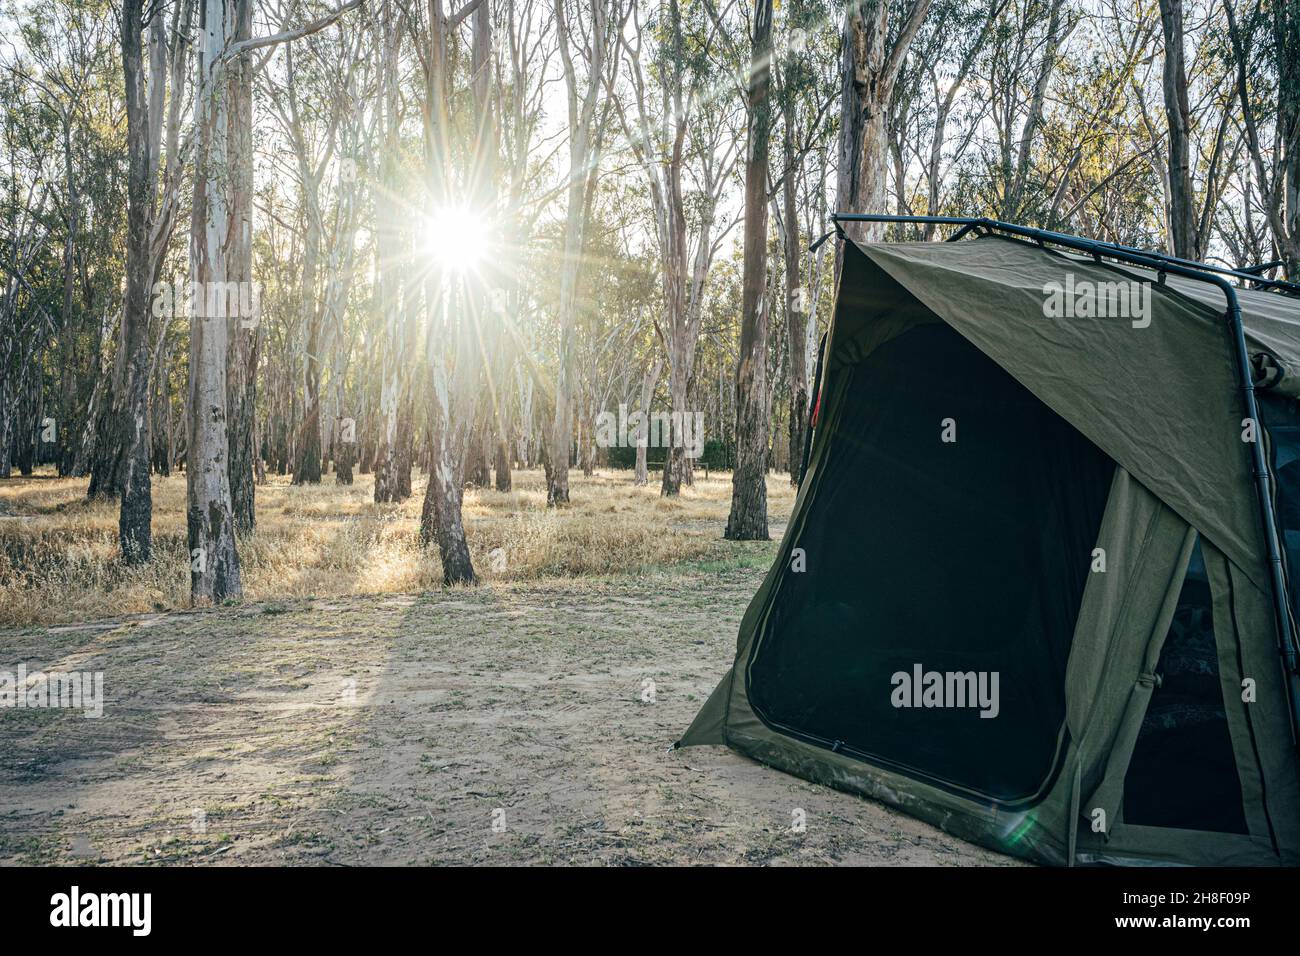 Tienda de campaña en el campamento soleado, arbusto australiano Foto de stock